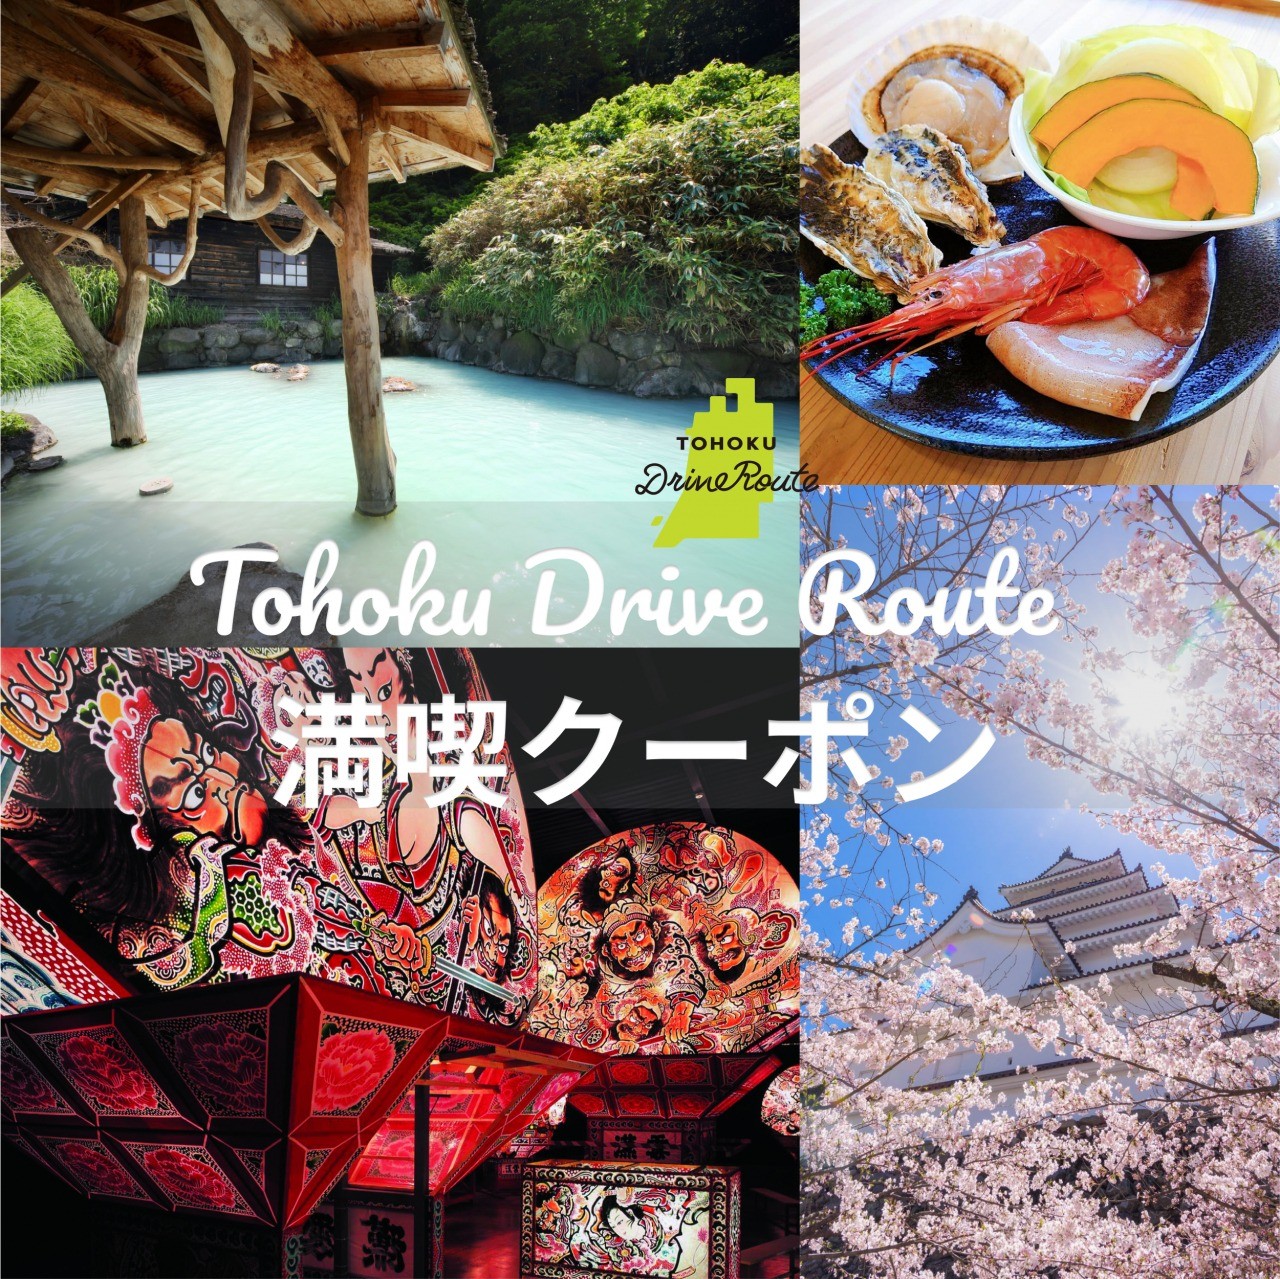 Tohoku Drive Route 満喫クーポン